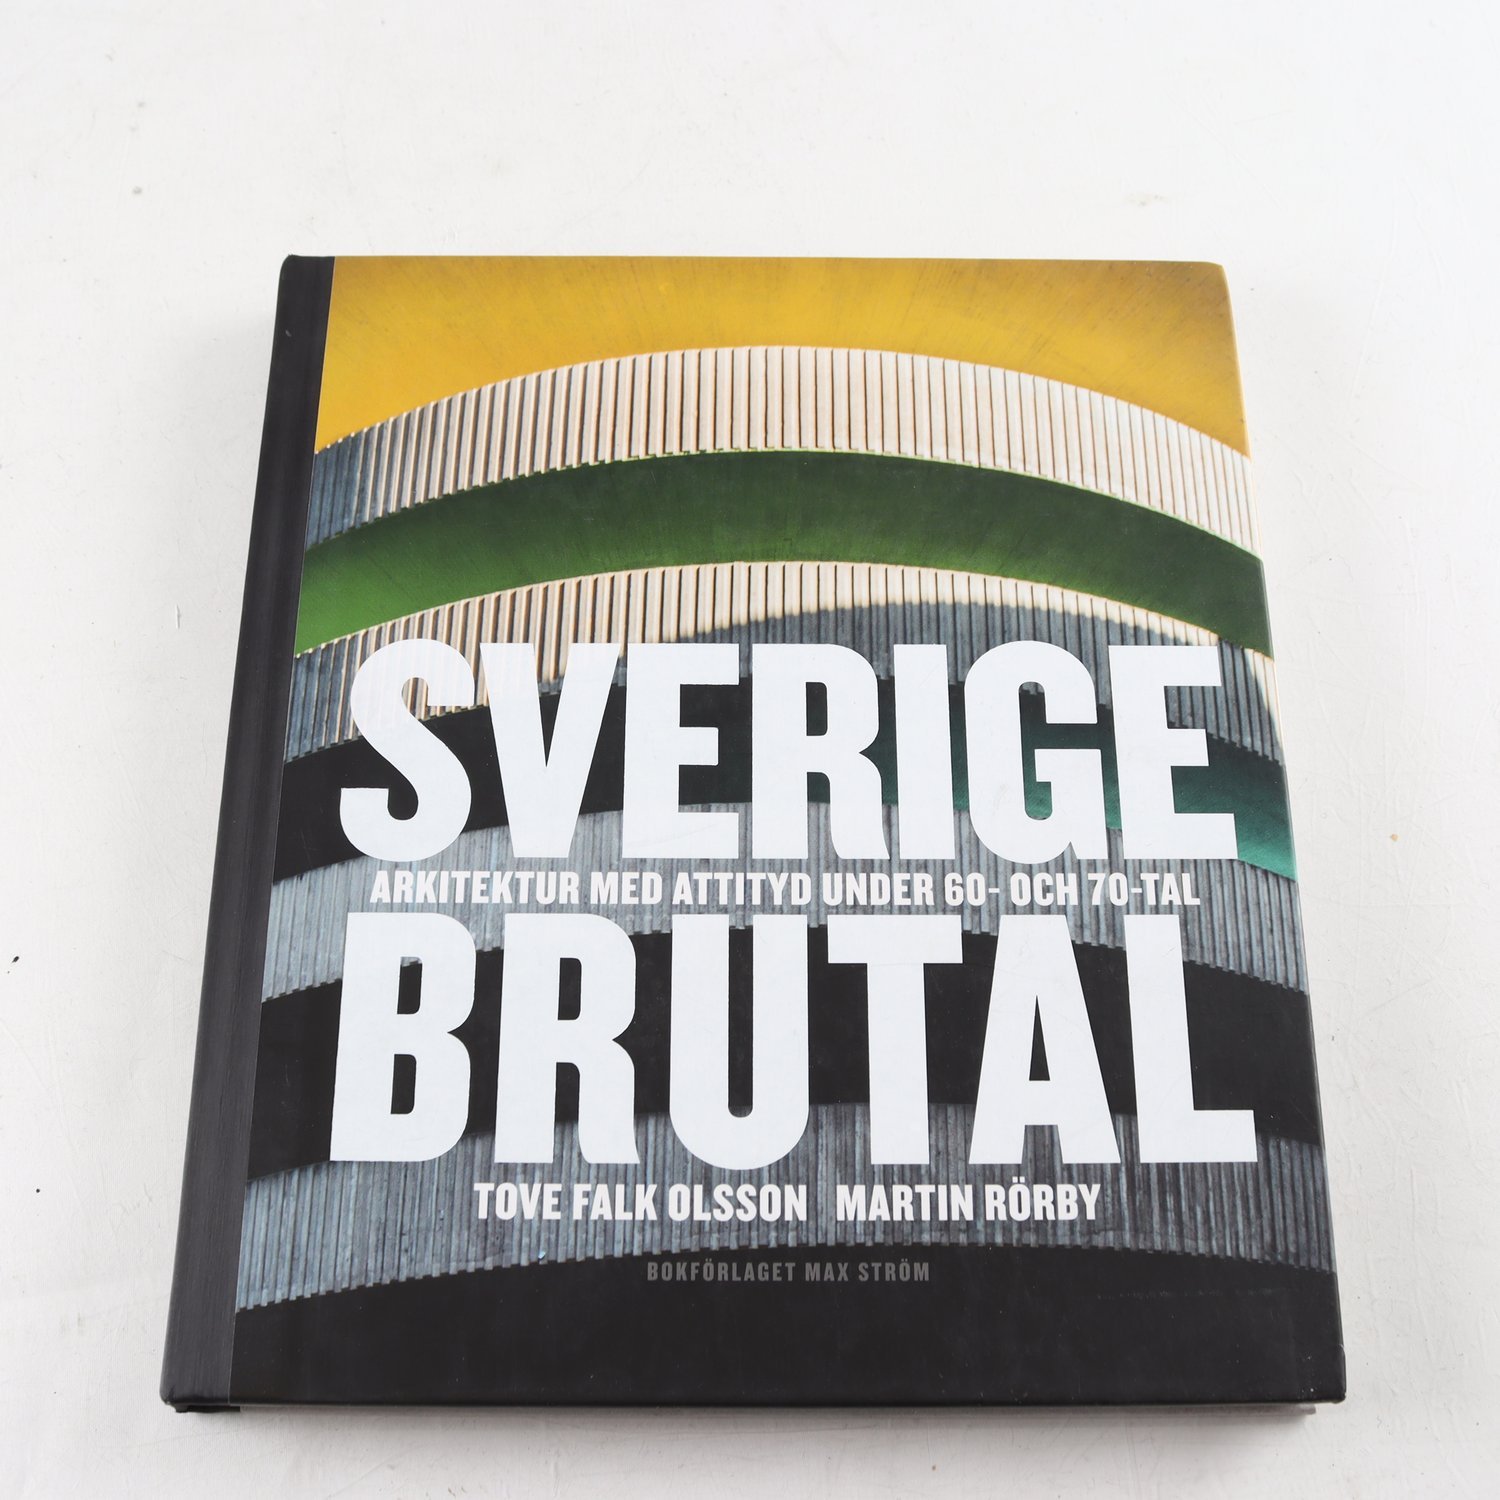 Sverige Brutal: Arkitektur med attityd under 60- och 70-tal